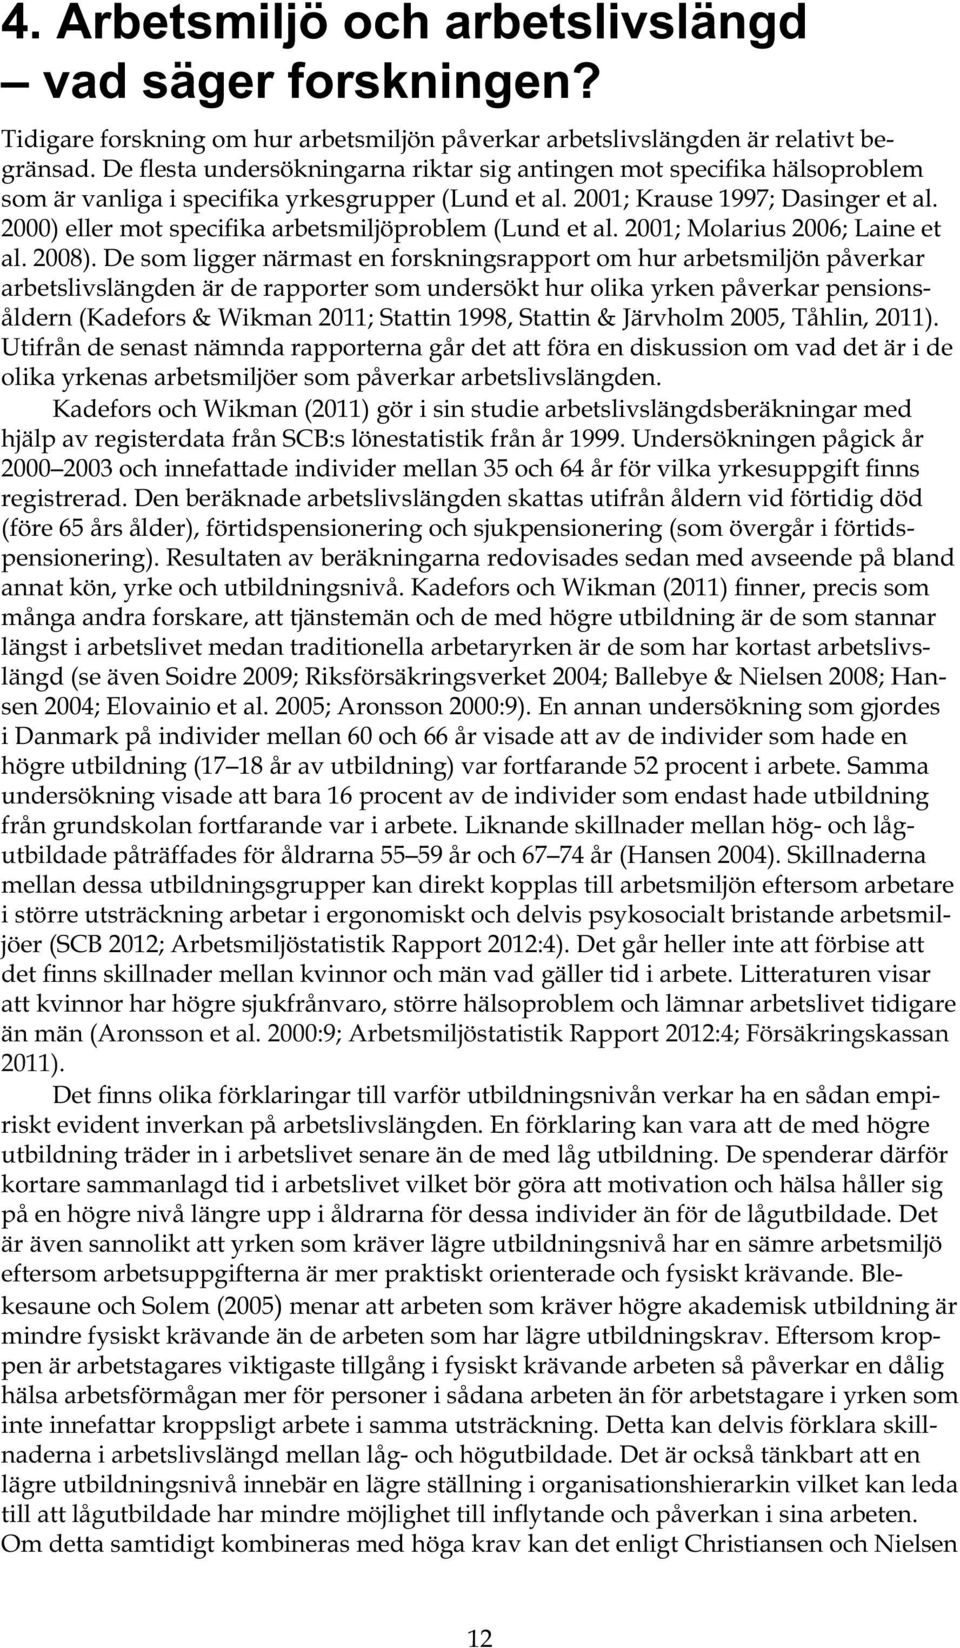 2000) eller mot specifika arbetsmiljöproblem (Lund et al. 2001; Molarius 2006; Laine et al. 2008).